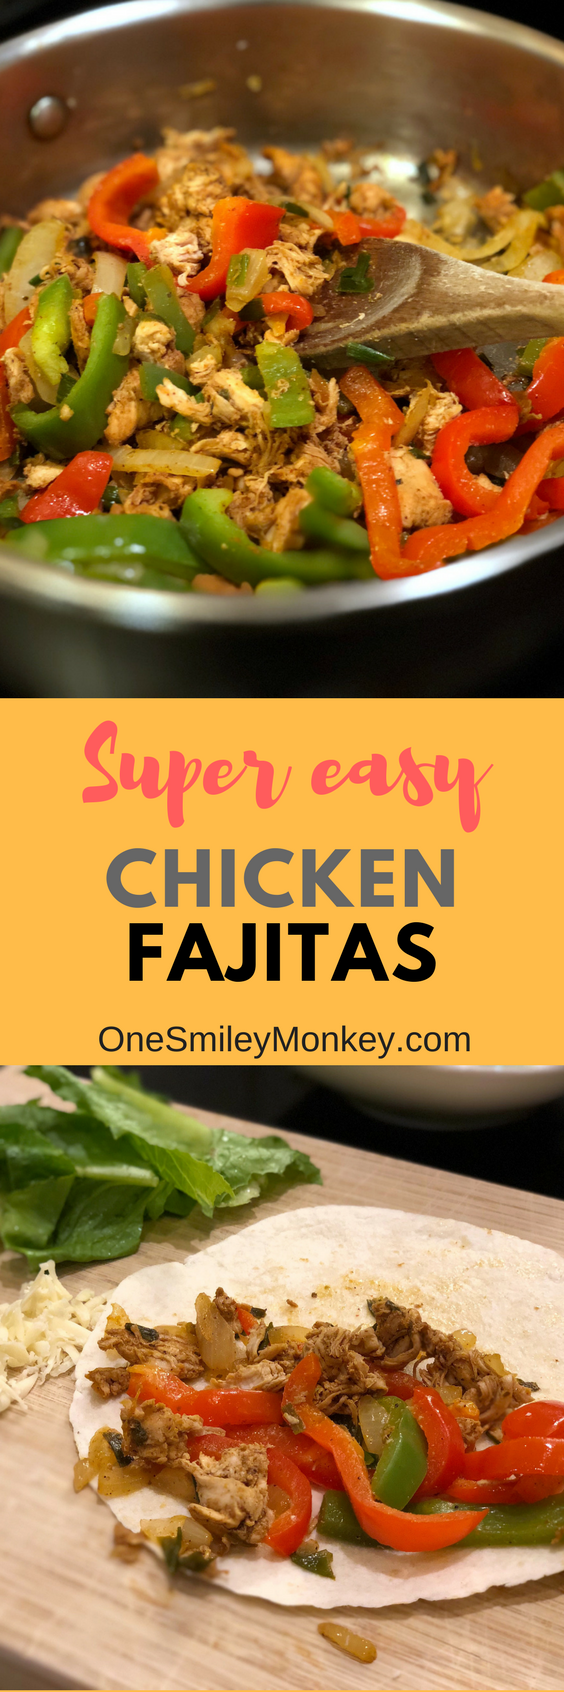 Super easy chicken fajitas recipe